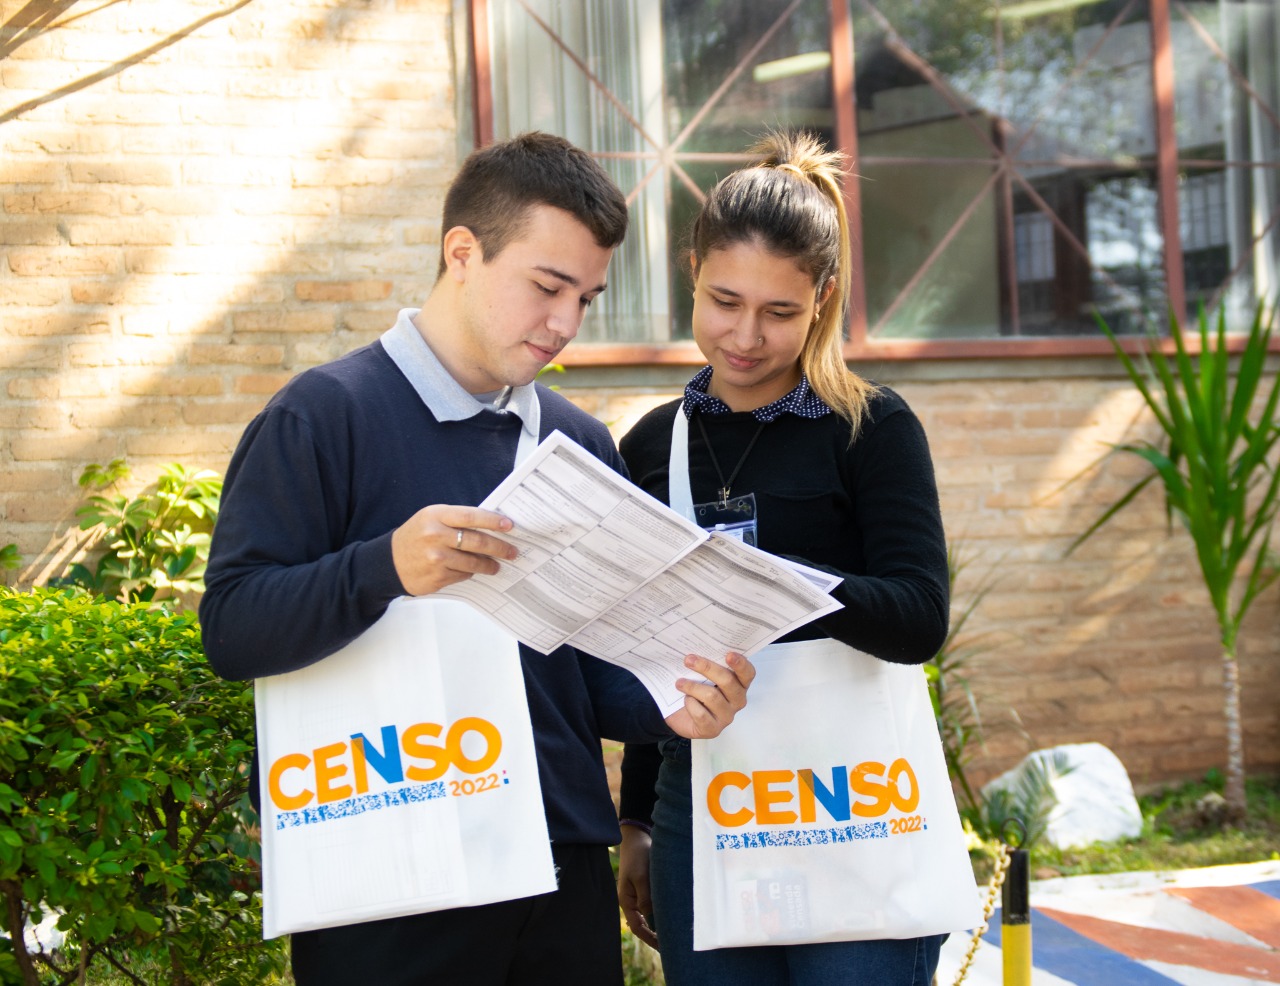 El censo se realizará el 9 de noviembre. Foto: INE